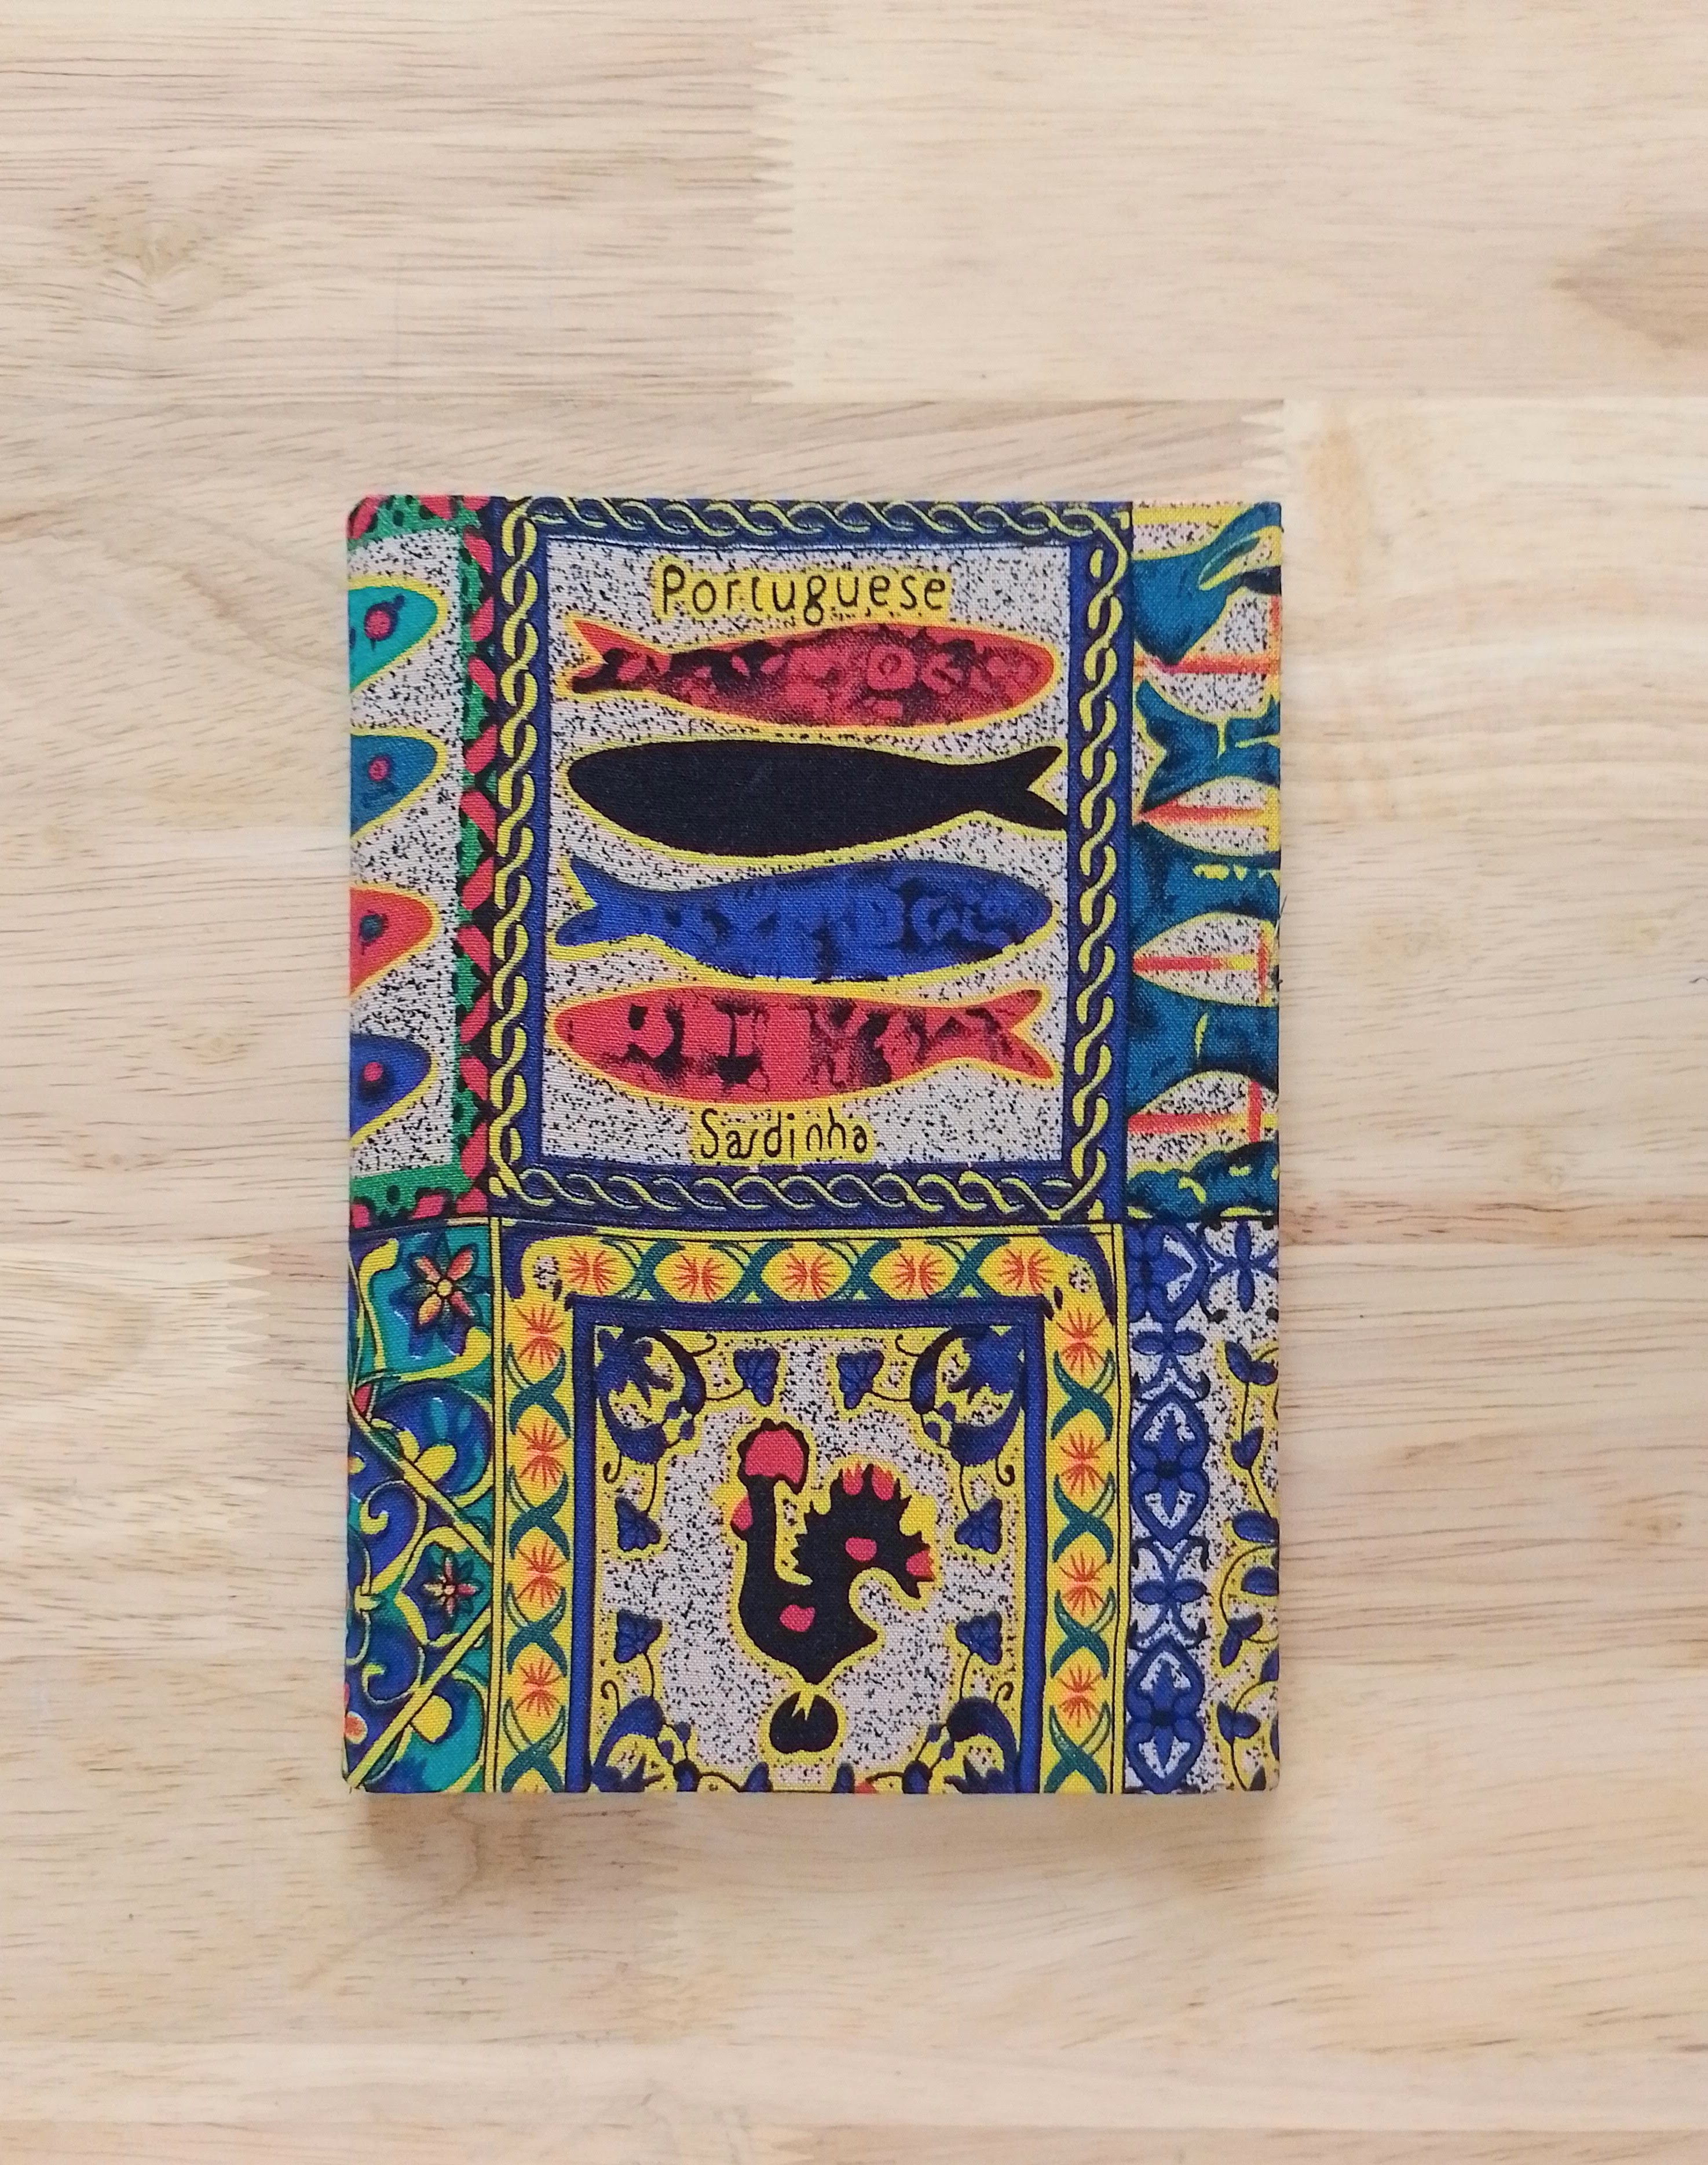 Sổ Tay Handmade Bìa Vải Hoa, Khổ (13 x 18), Dùng Cho Ghi Chép, Viết Nhật Kí, Quà Tặng